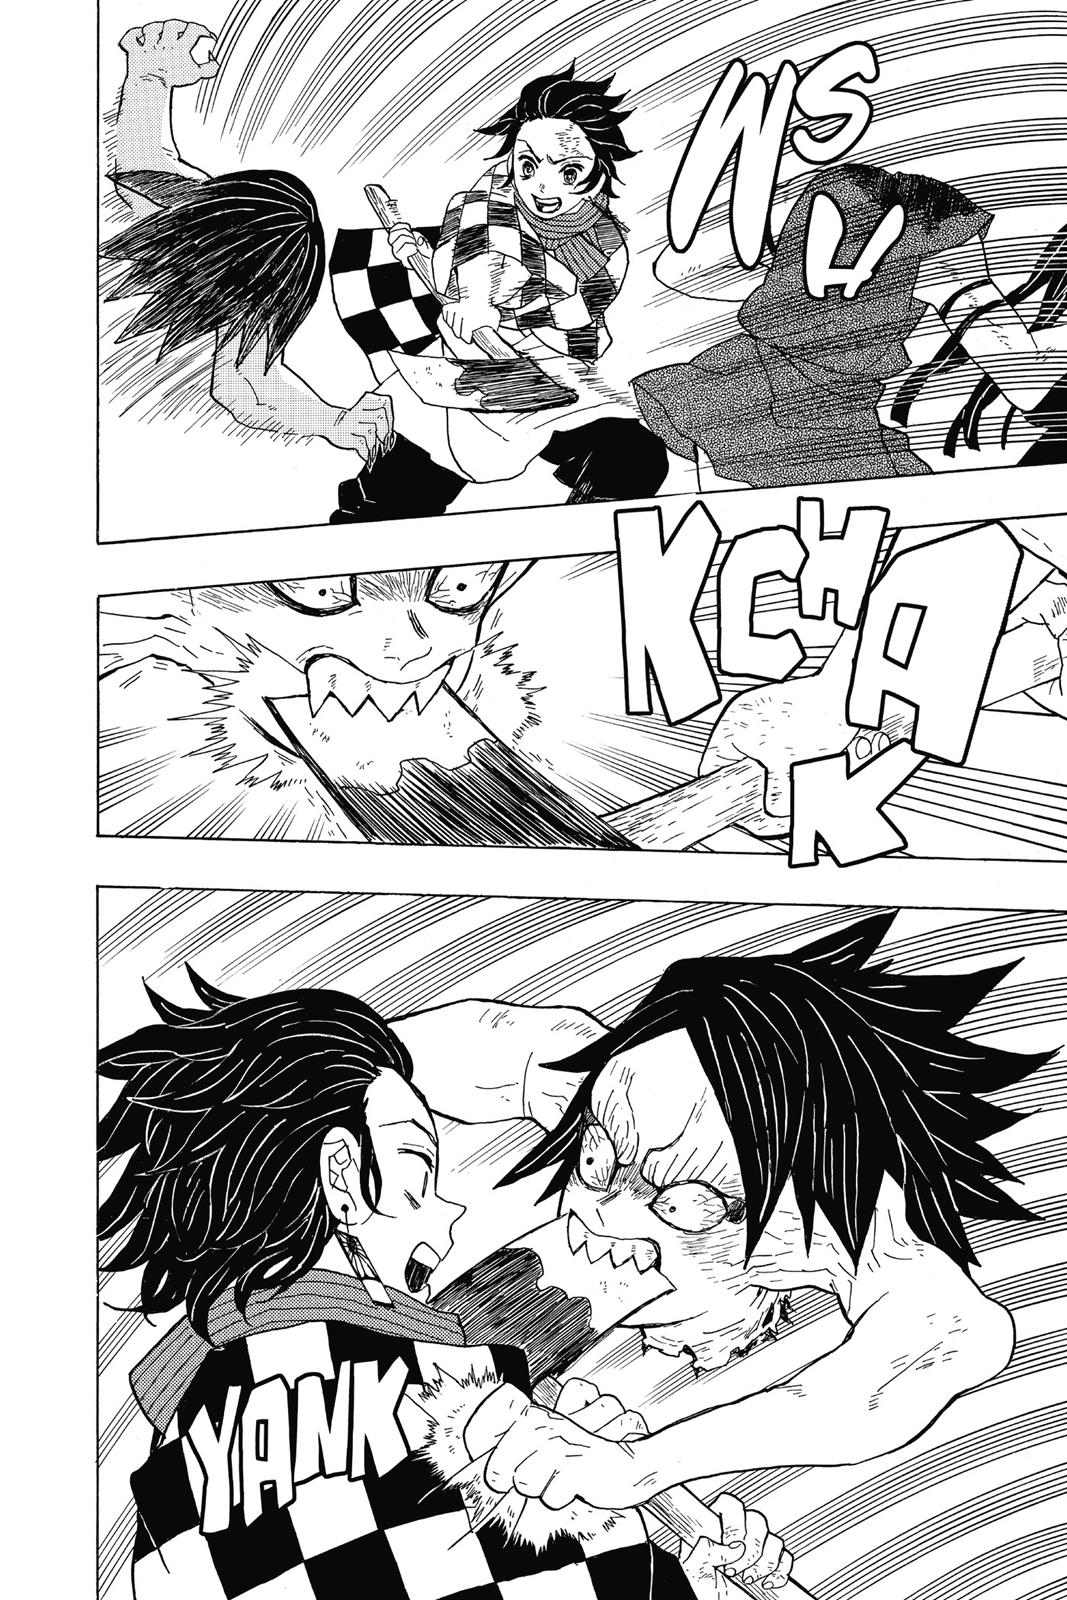 Demon Slayer Manga Manga Chapter - 2 - image 10